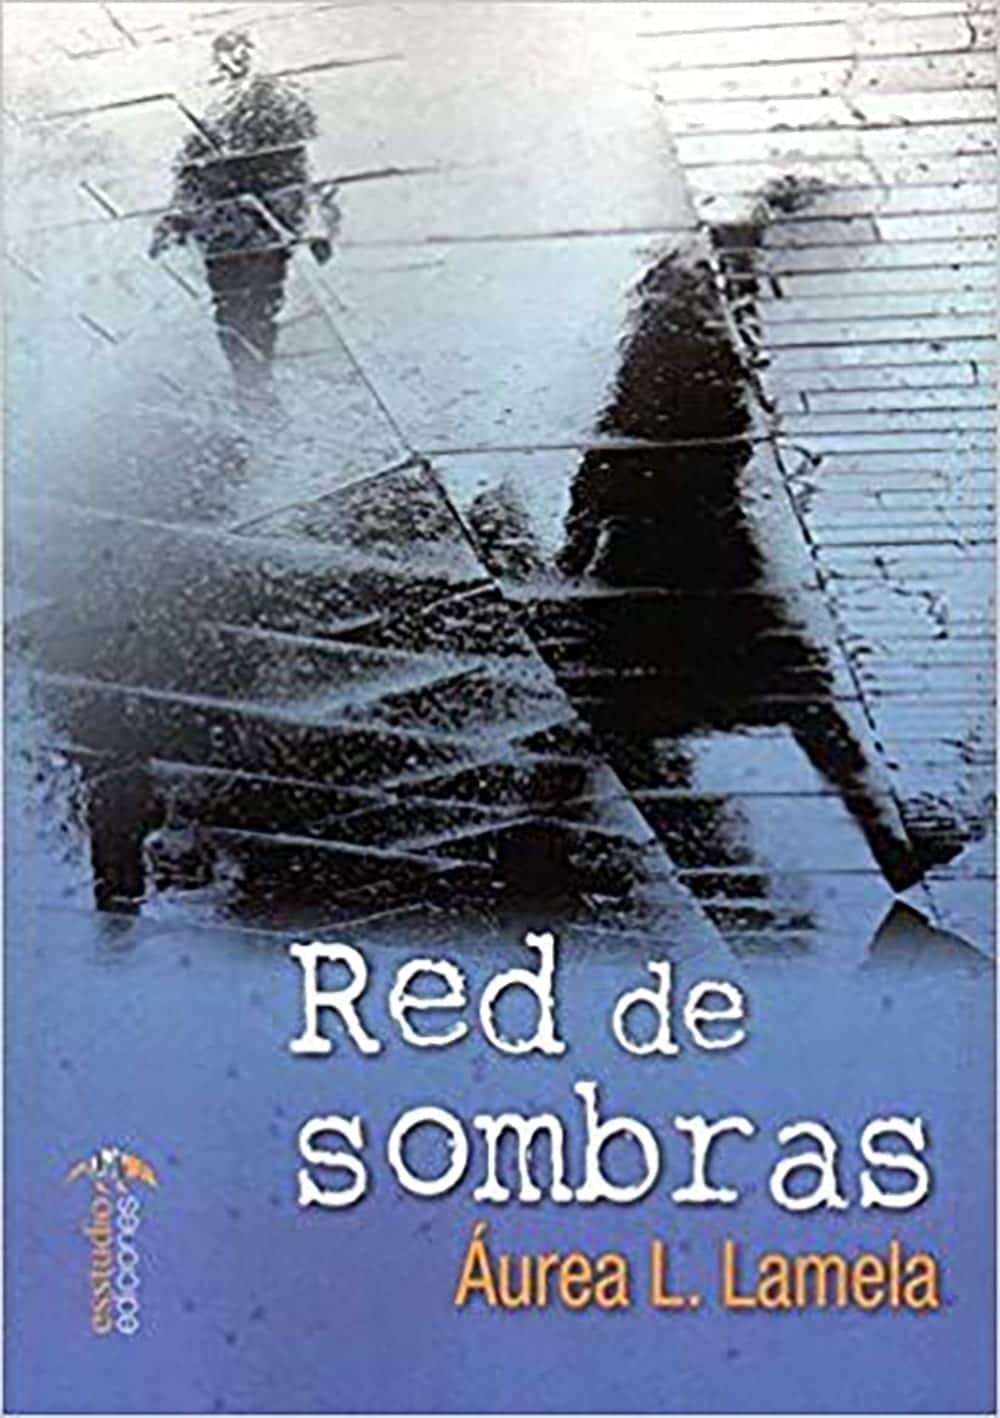 Red de Sombras: Áurea L. Lamela regresa a la literatura detectivesca